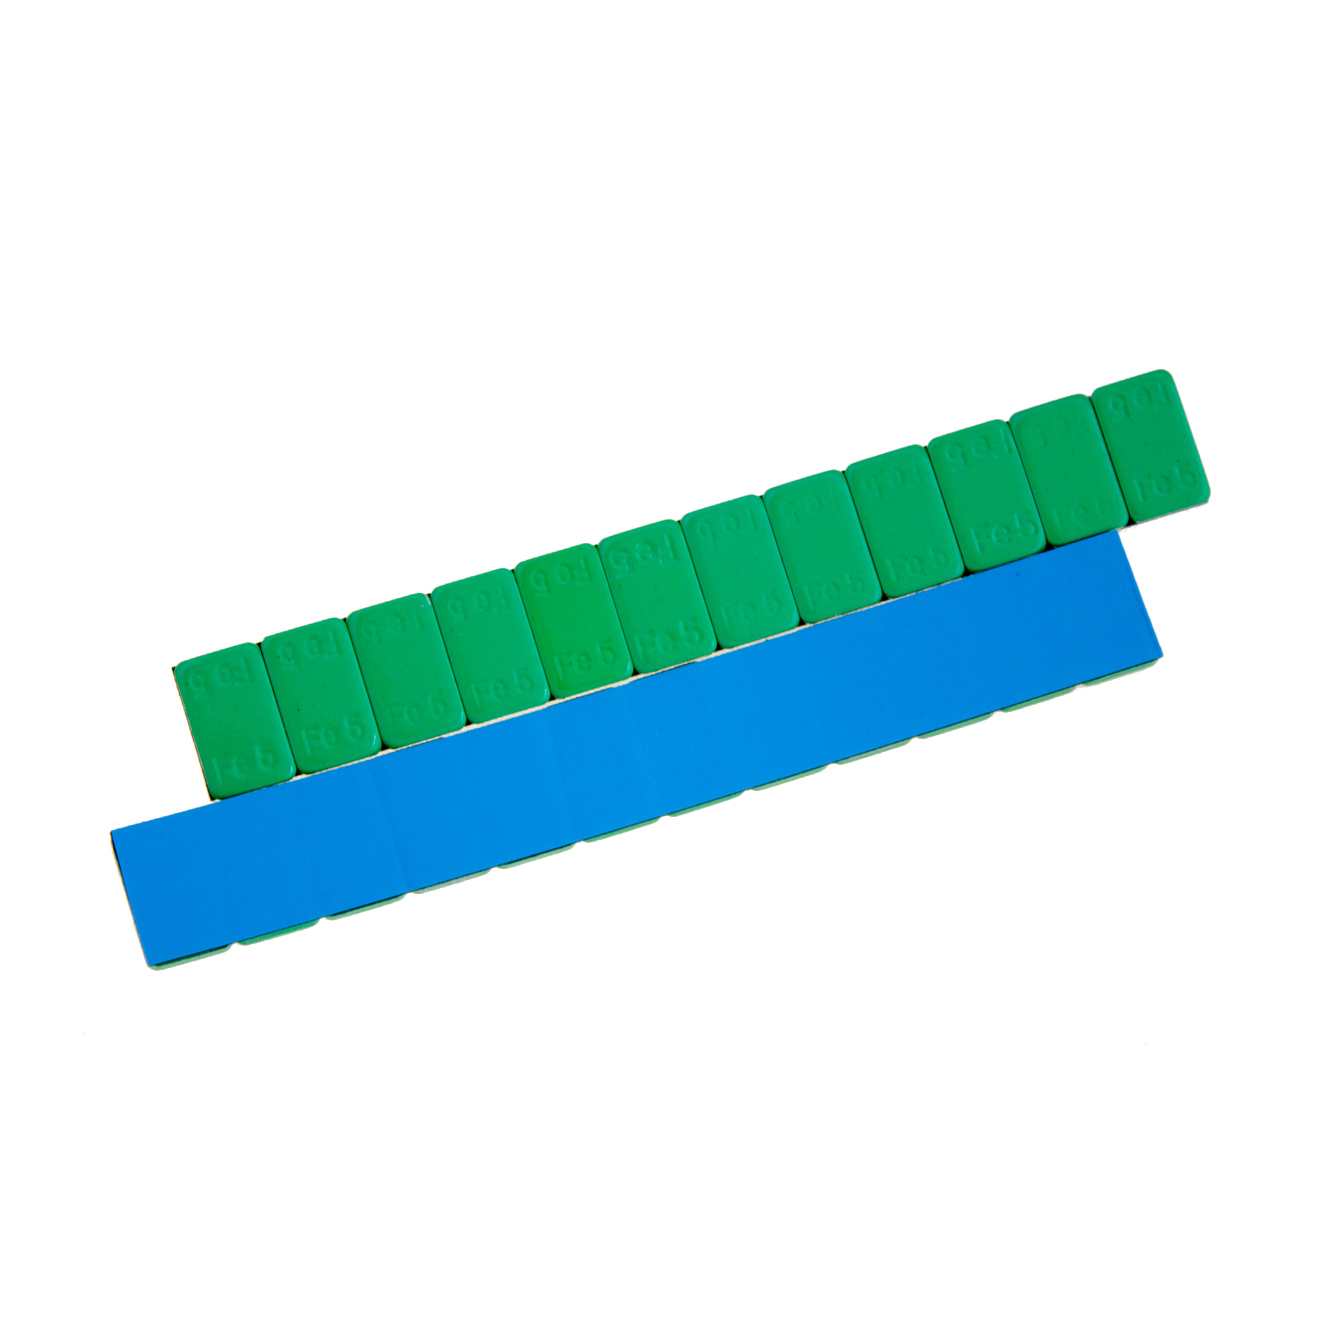 Груза адгезивные Fe 071G 12×5 гр (Синий скотч) (Зеленая эмаль) (100 шт.) НОРМ  Fe 071G 12×5_0